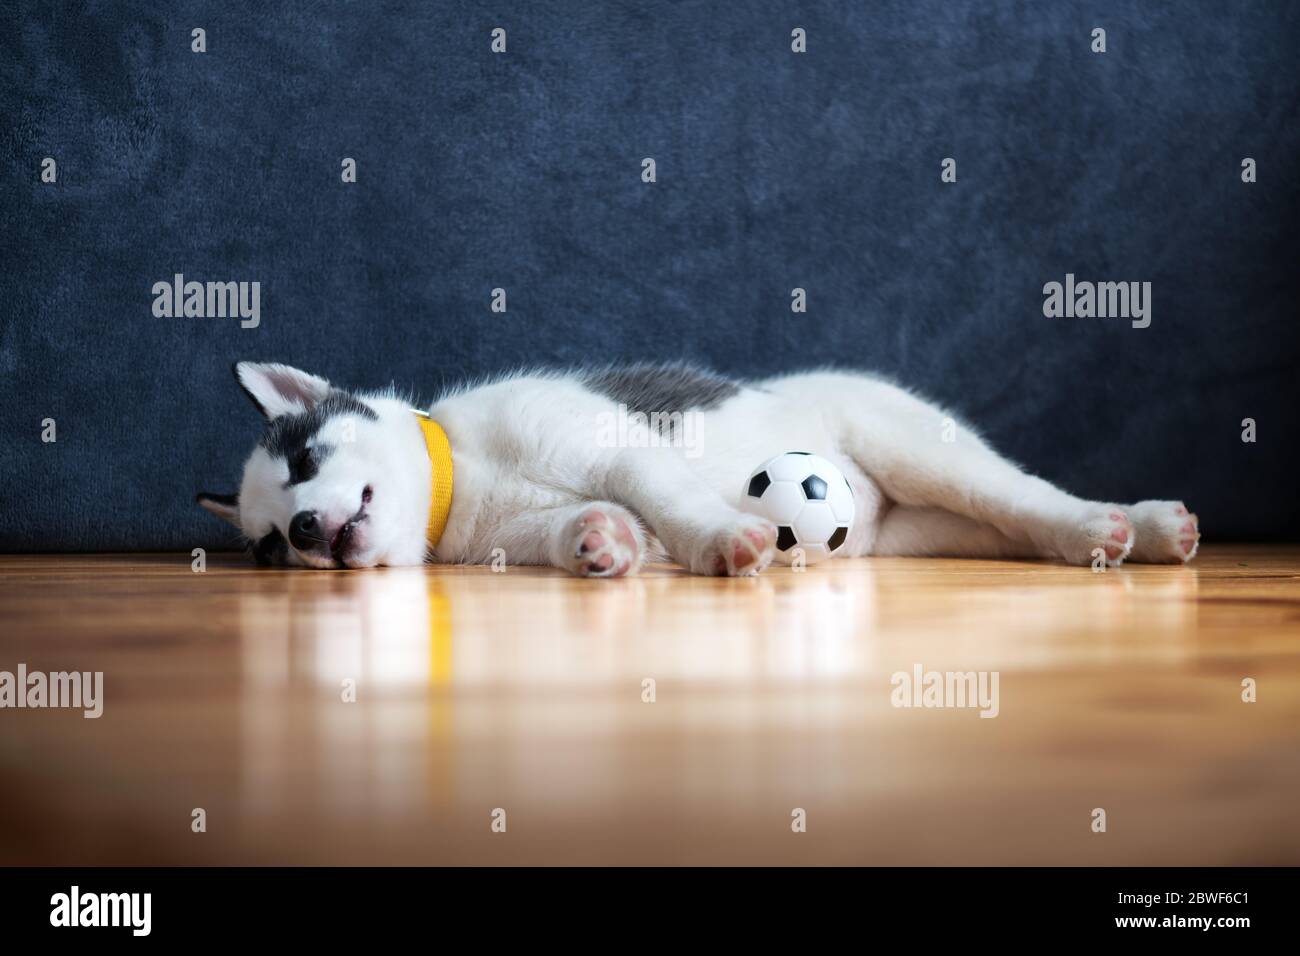 Un petit chien blanc chiot race husky sibérien avec de beaux yeux bleus repose sur un sol en bois avec un jouet de balle. Photographie de chiens et d'animaux de compagnie Banque D'Images